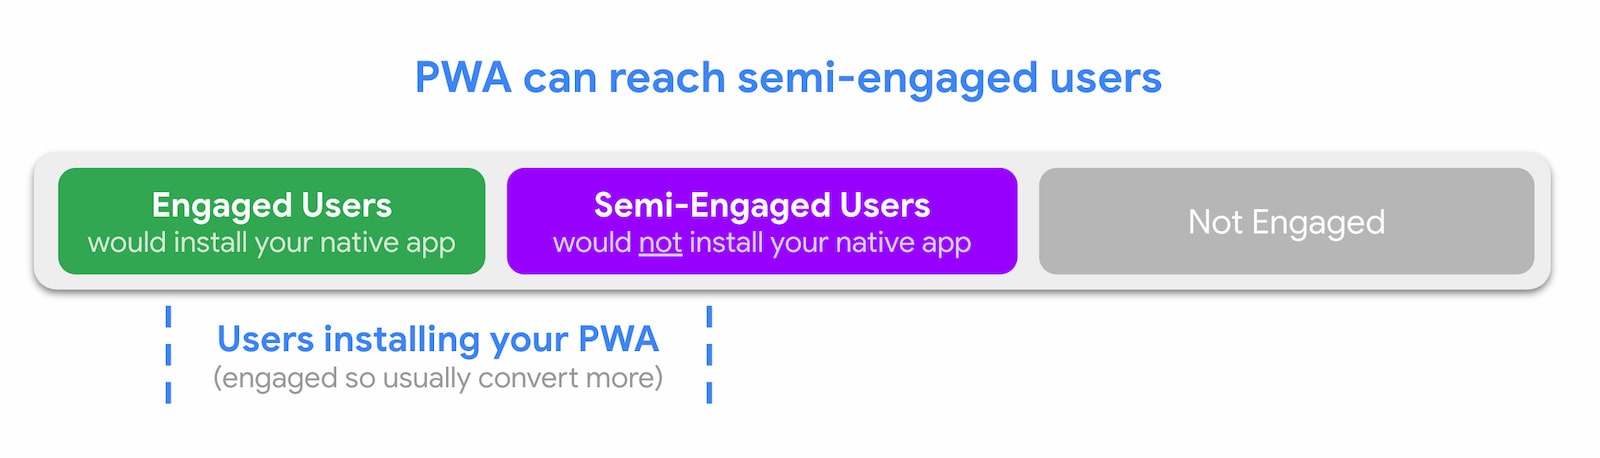 يمكن لتطبيقات الويب التقدّمية (PWA) الوصول إلى المستخدمين غير المتفاعلين.